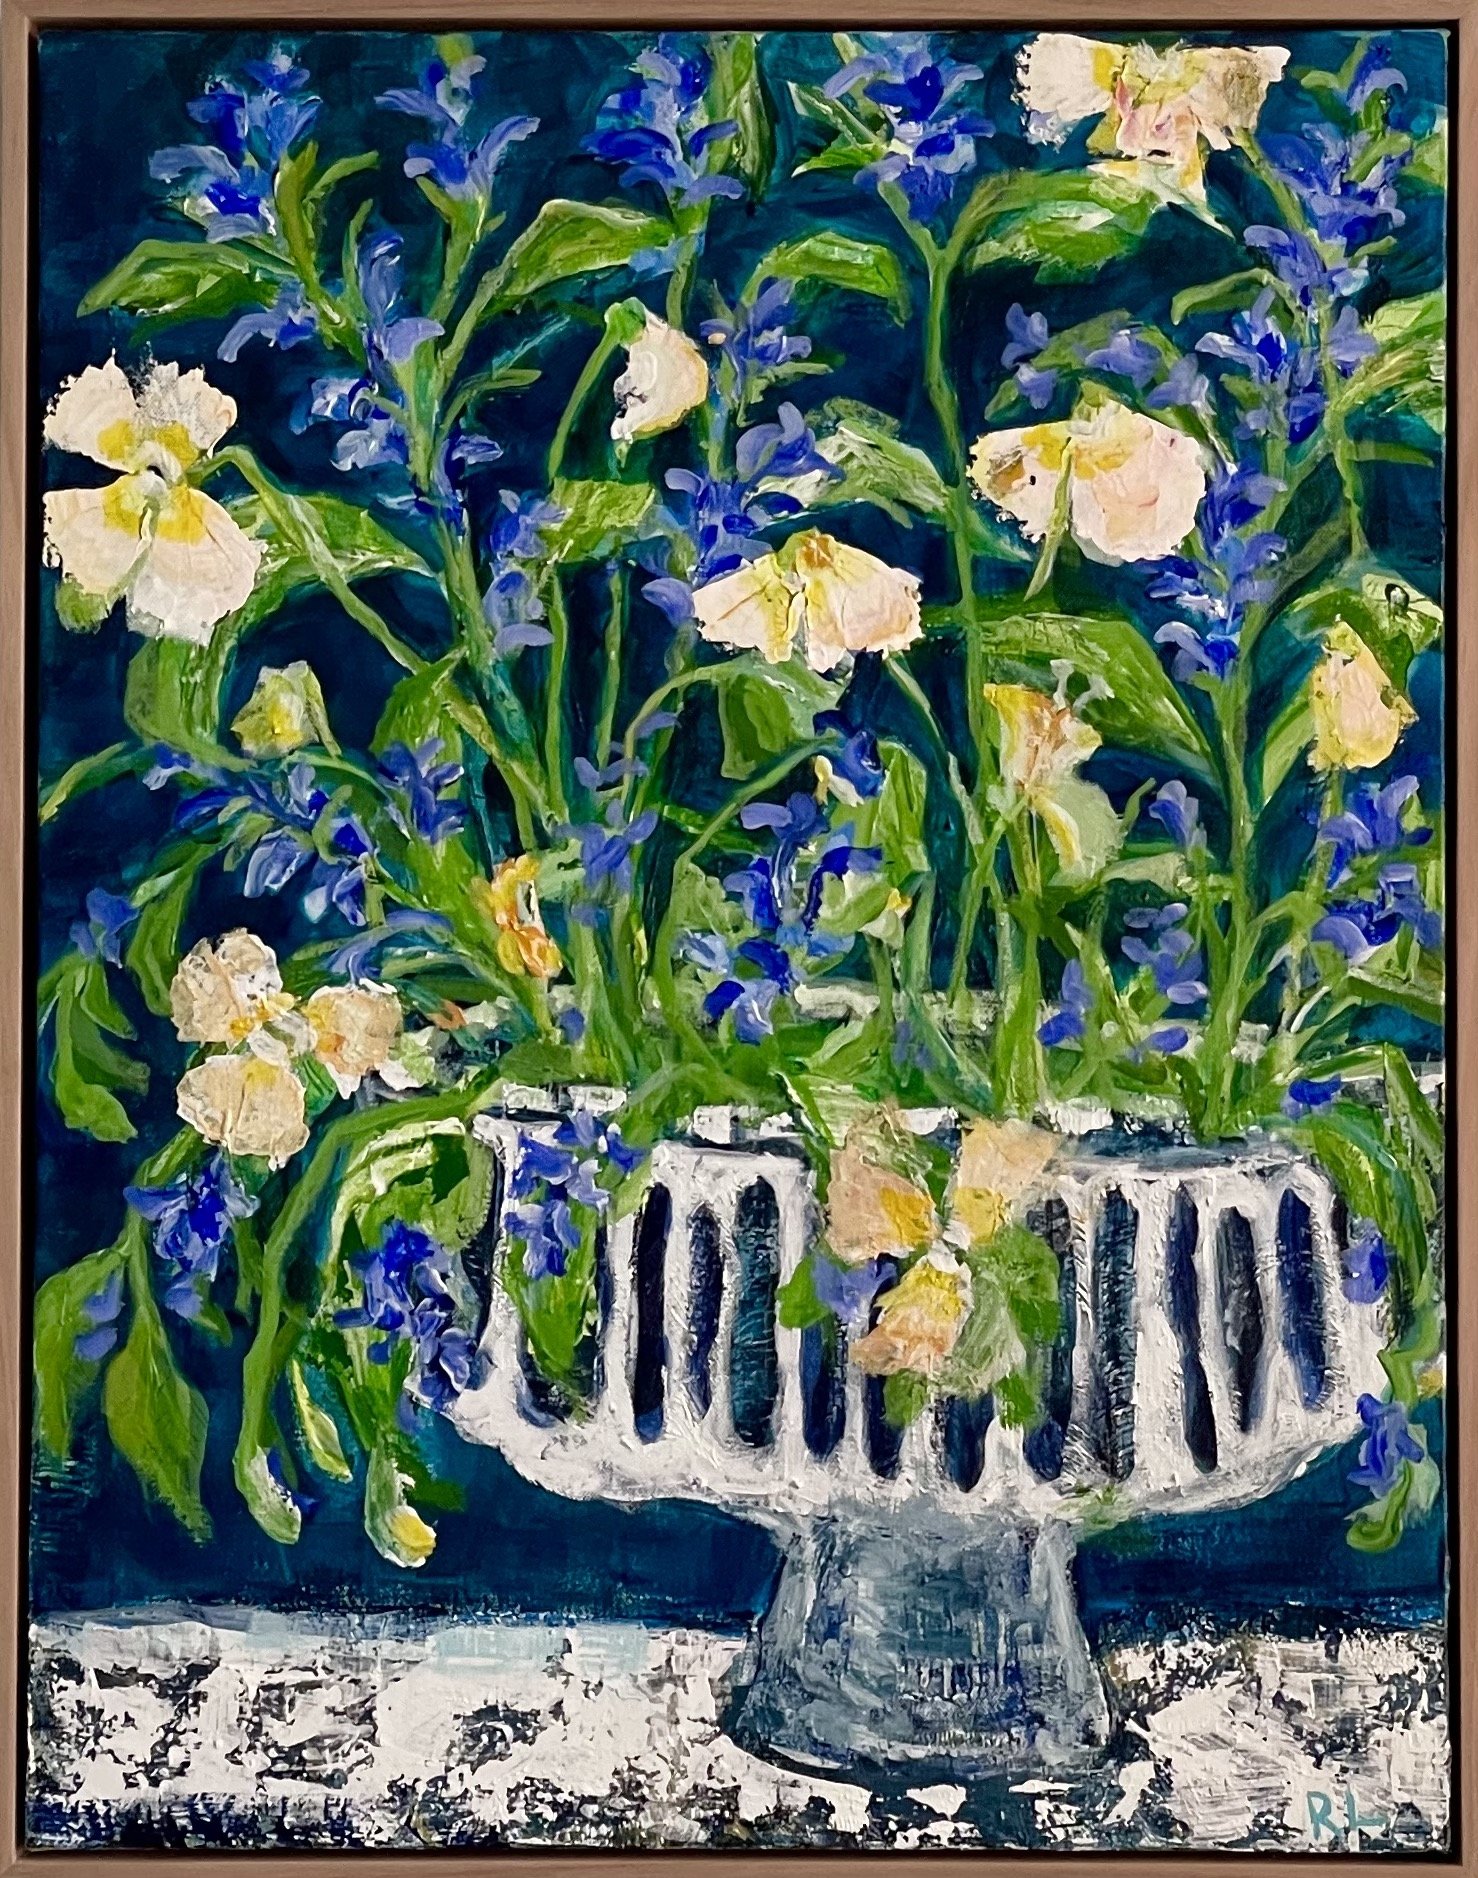 Floral Cascade 55x71cm framed acrylic on canvas $1500